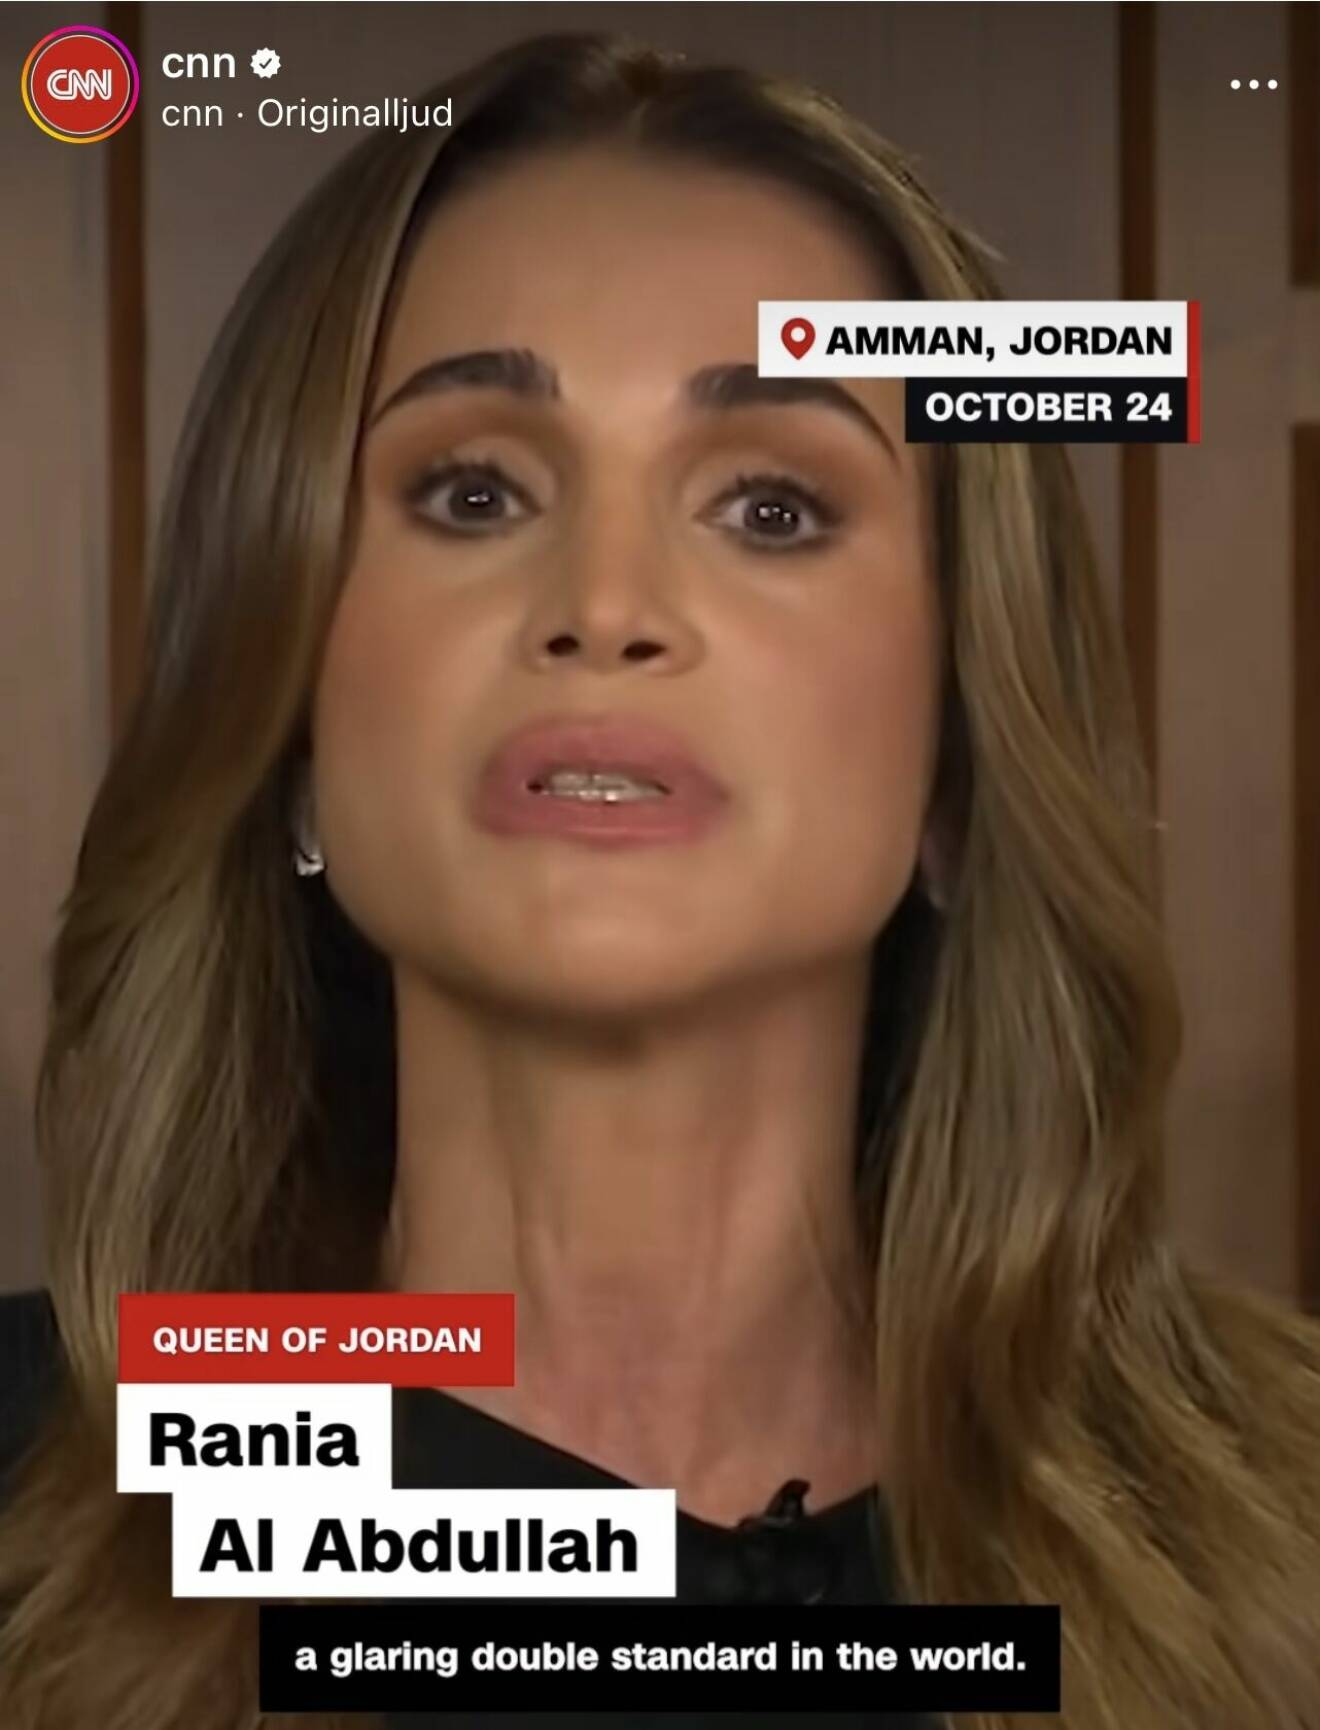 Drottning Rania i intervju i CNN om kriget mellan Israel och Palestina